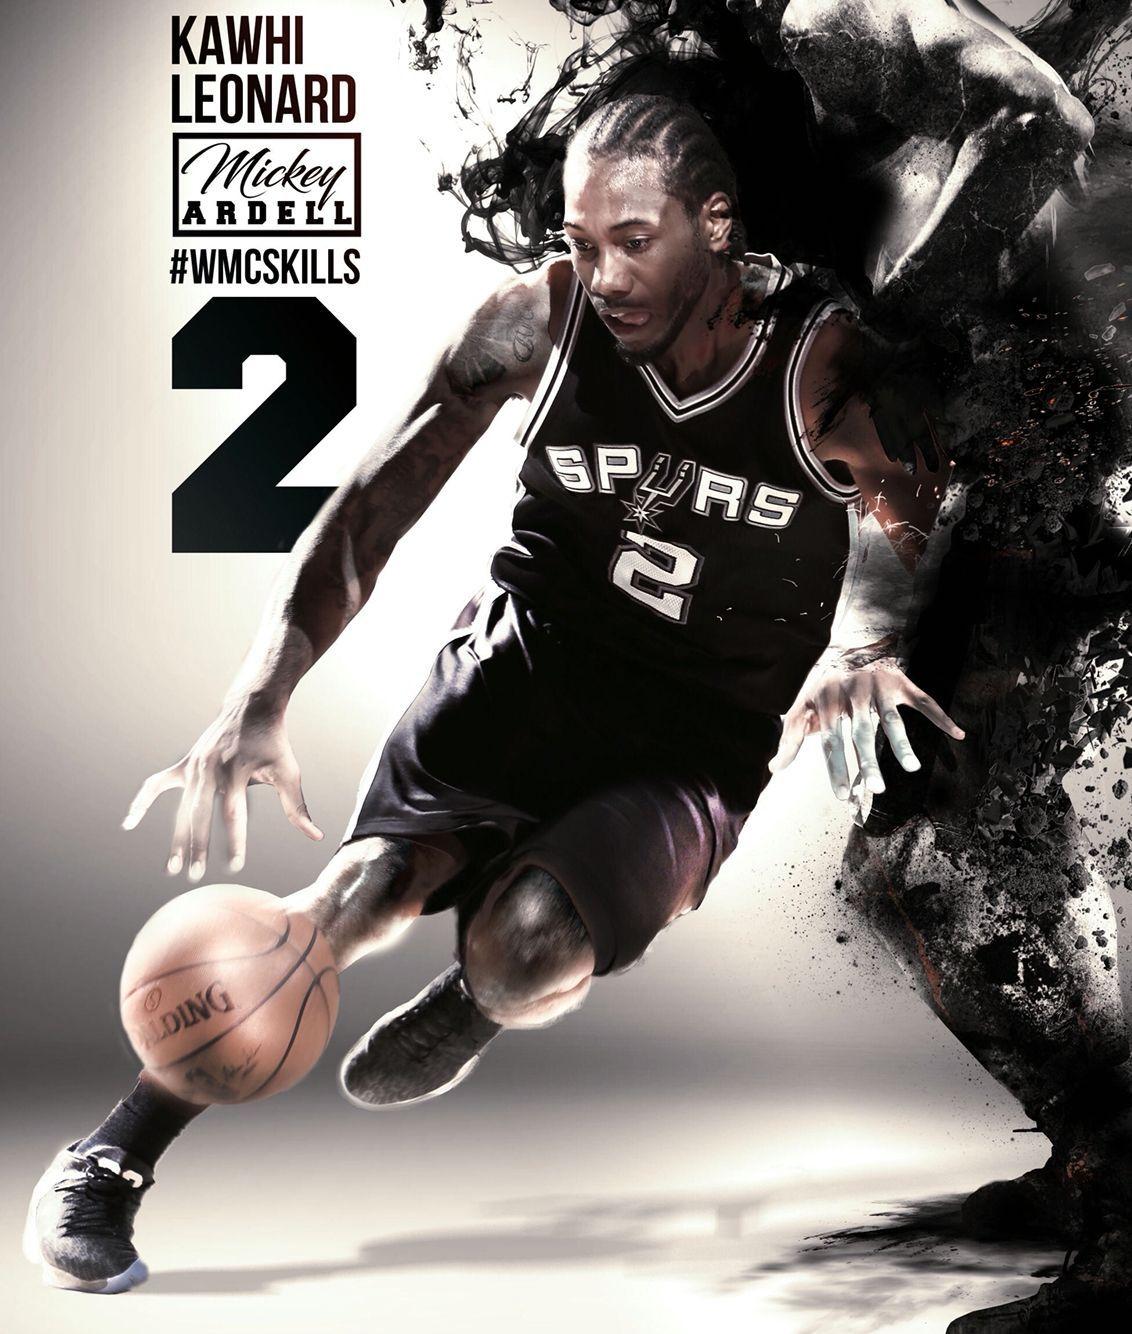 1132x1334 Kawhi Leonard.  San Antonio Spurs #wmcskills.  San Antonio